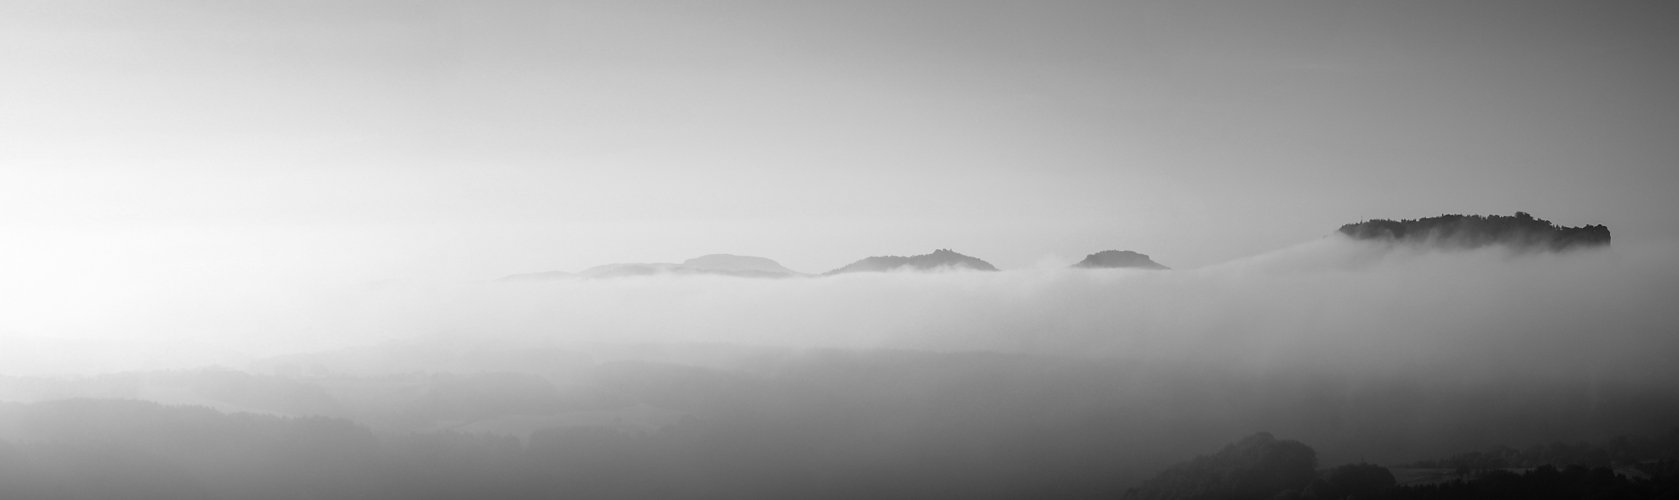 Böhmisches Nebelmeer